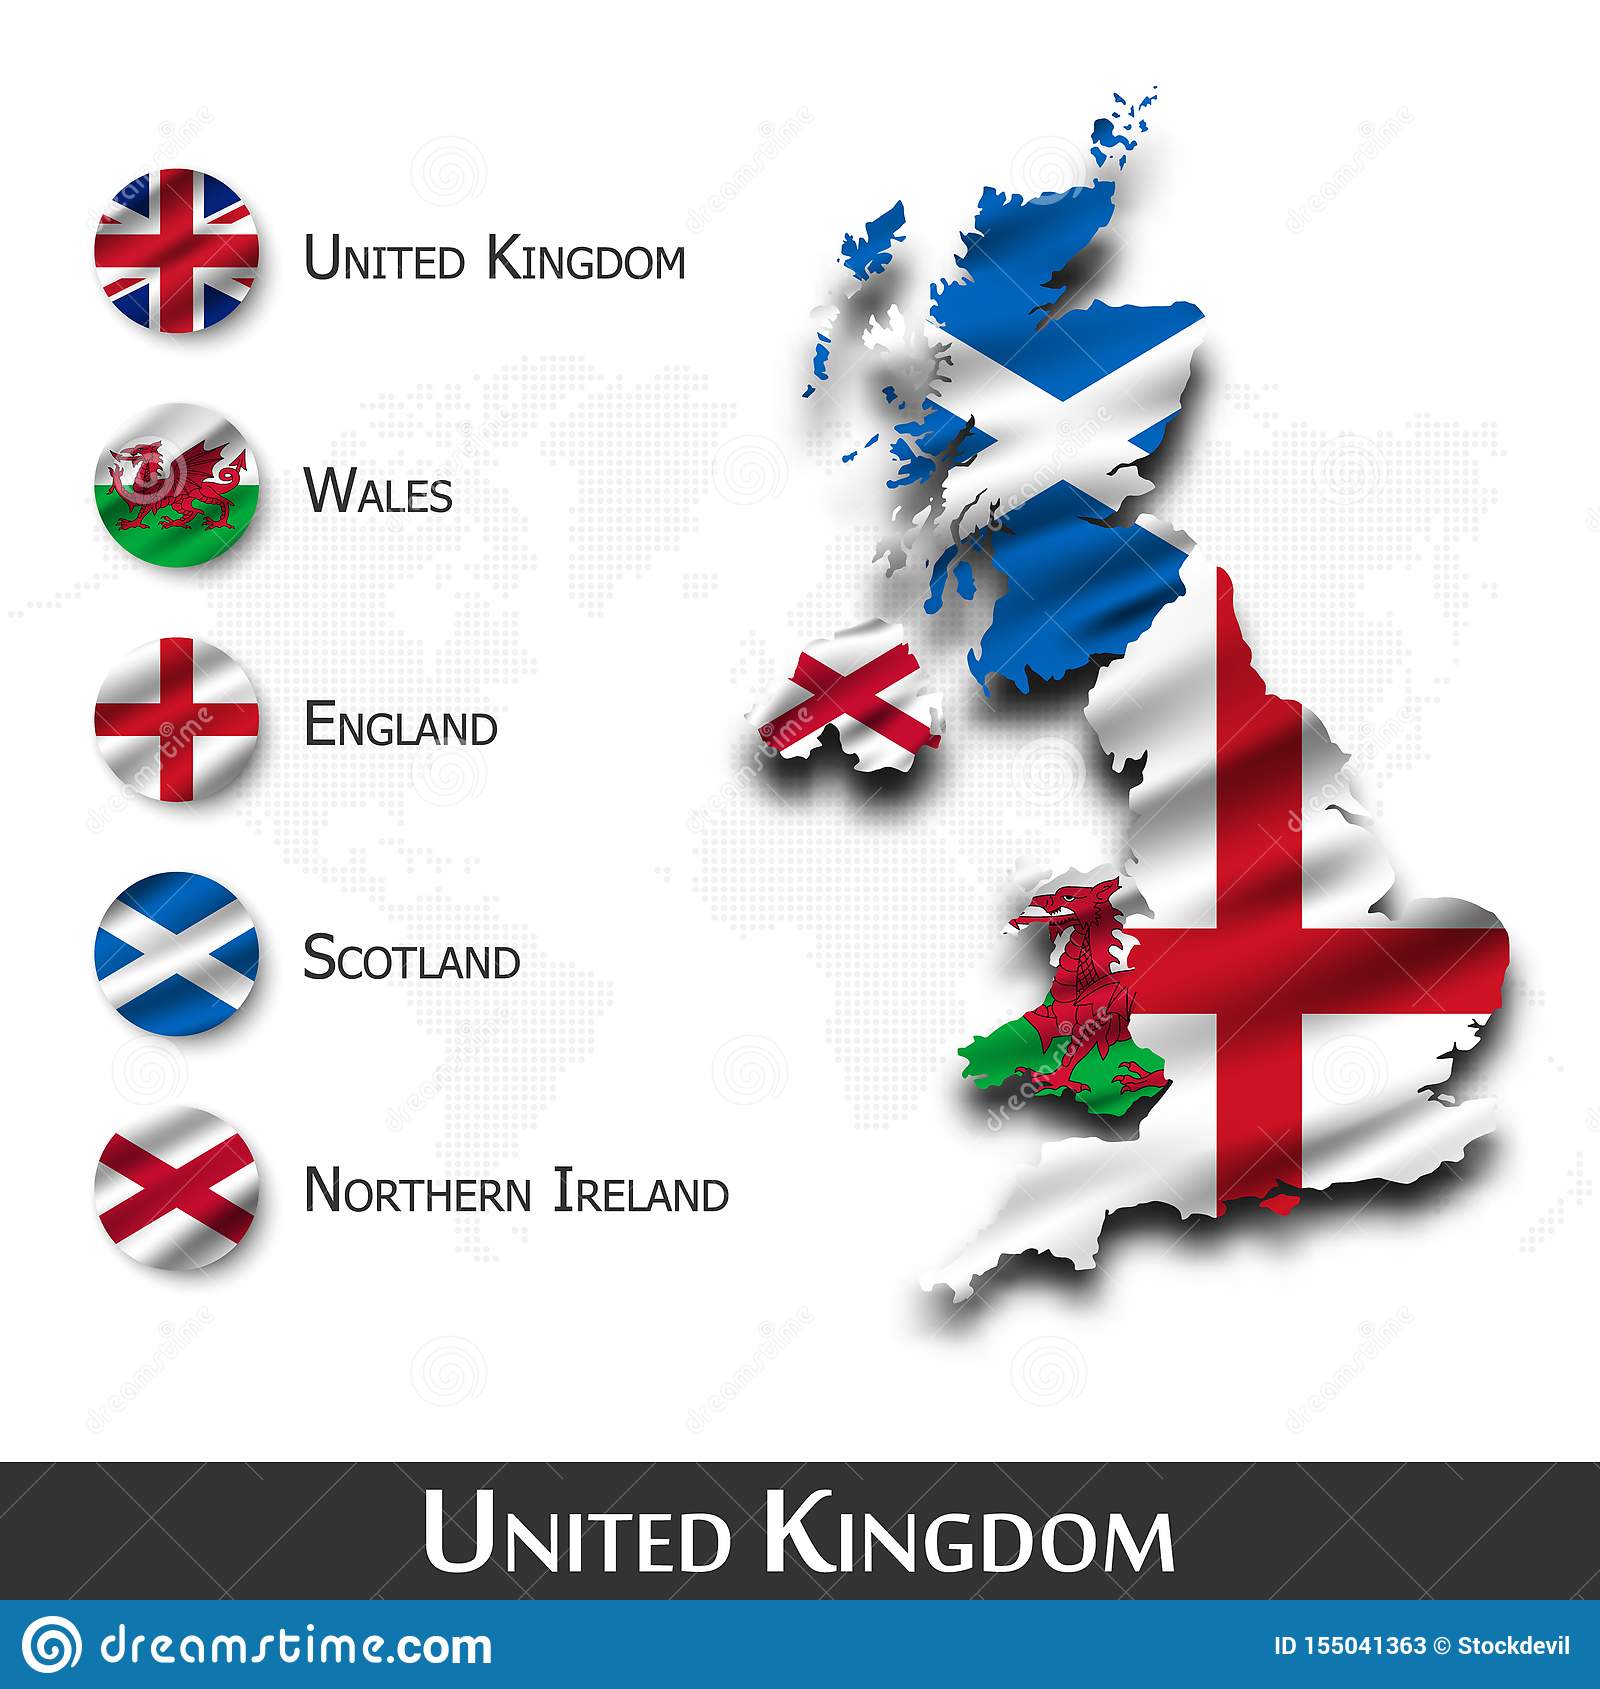 Страны в составе великобритании: шотландия и уэльс, северная ирландия и англия, особенности территорий